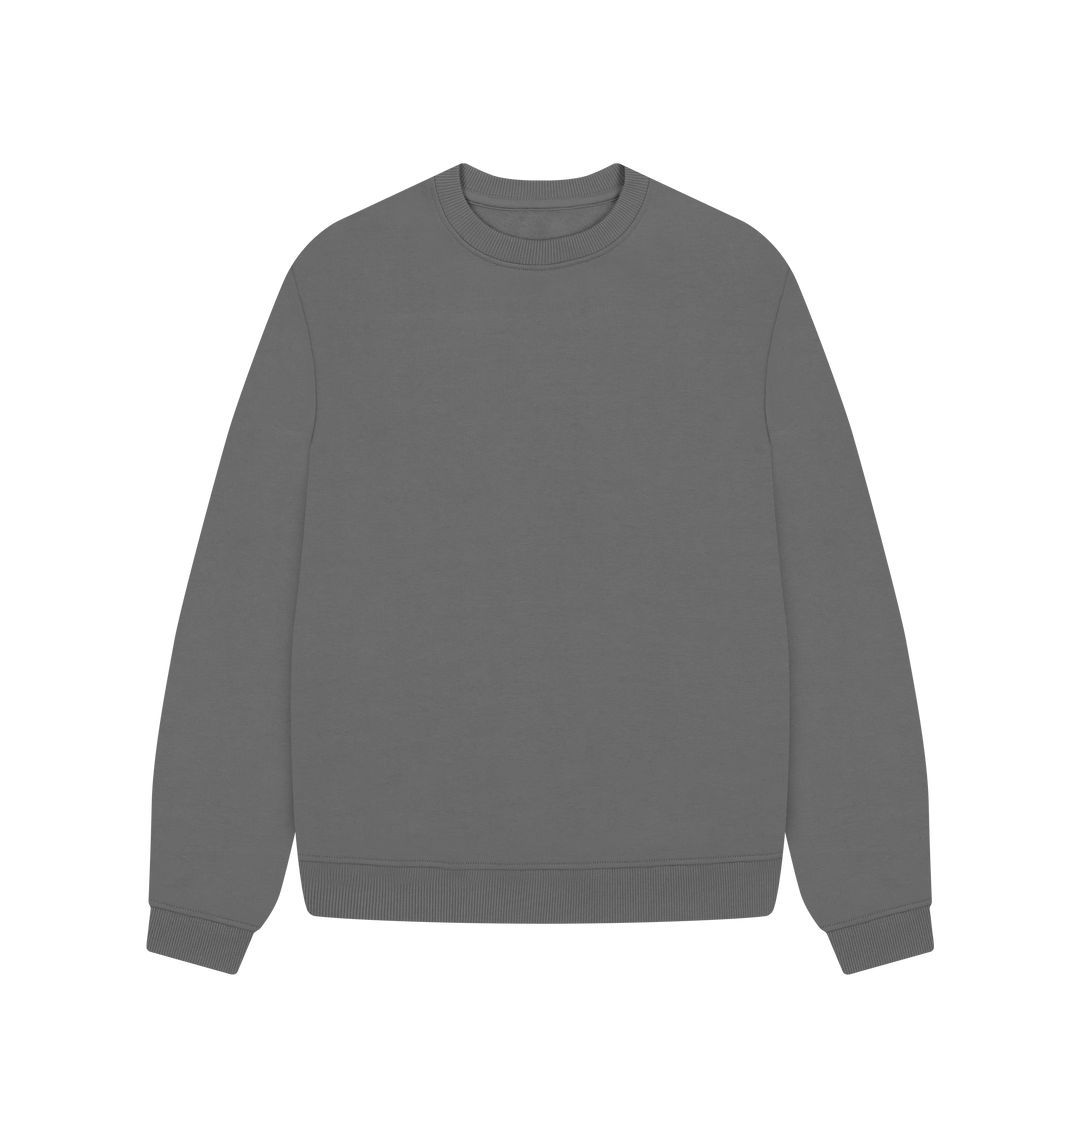 Slate Grey Women's organic cotton oversized sweatshirt